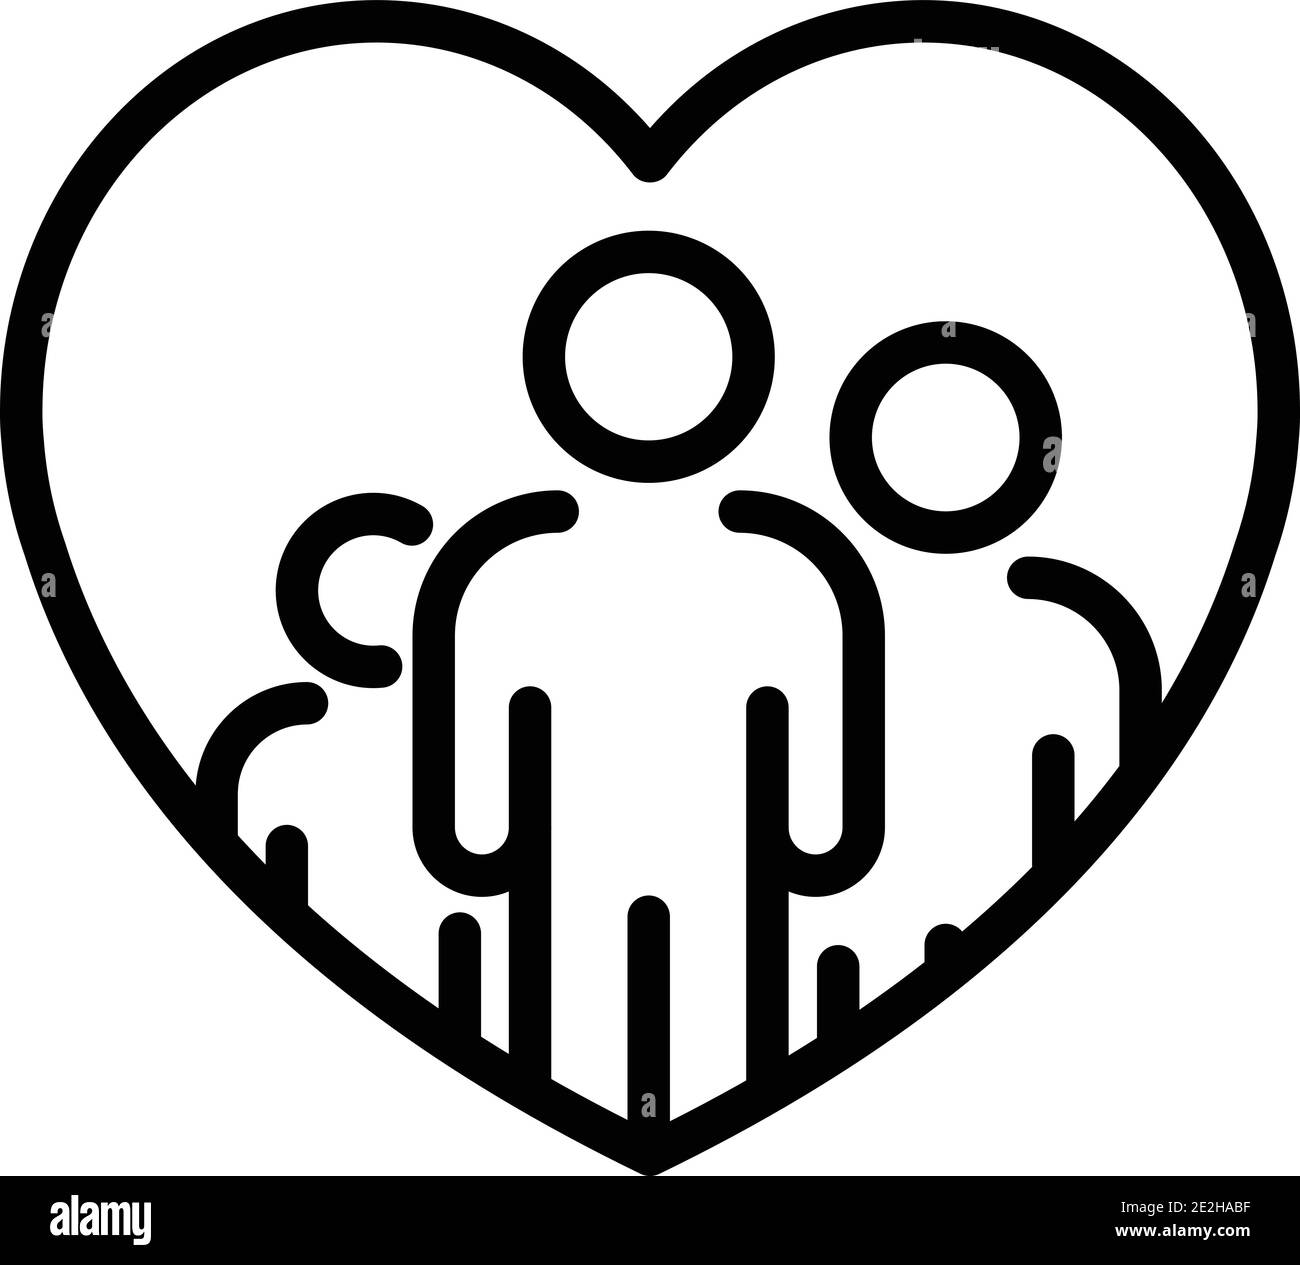 Liebe und Herz-Symbole. Liebe Paar, Familie, Kinder und romantische  Beziehungen Zeichen, Menschen Beziehungen, Pflege und Vorliebe Vektor  isoliert Symbole Stock-Vektorgrafik - Alamy